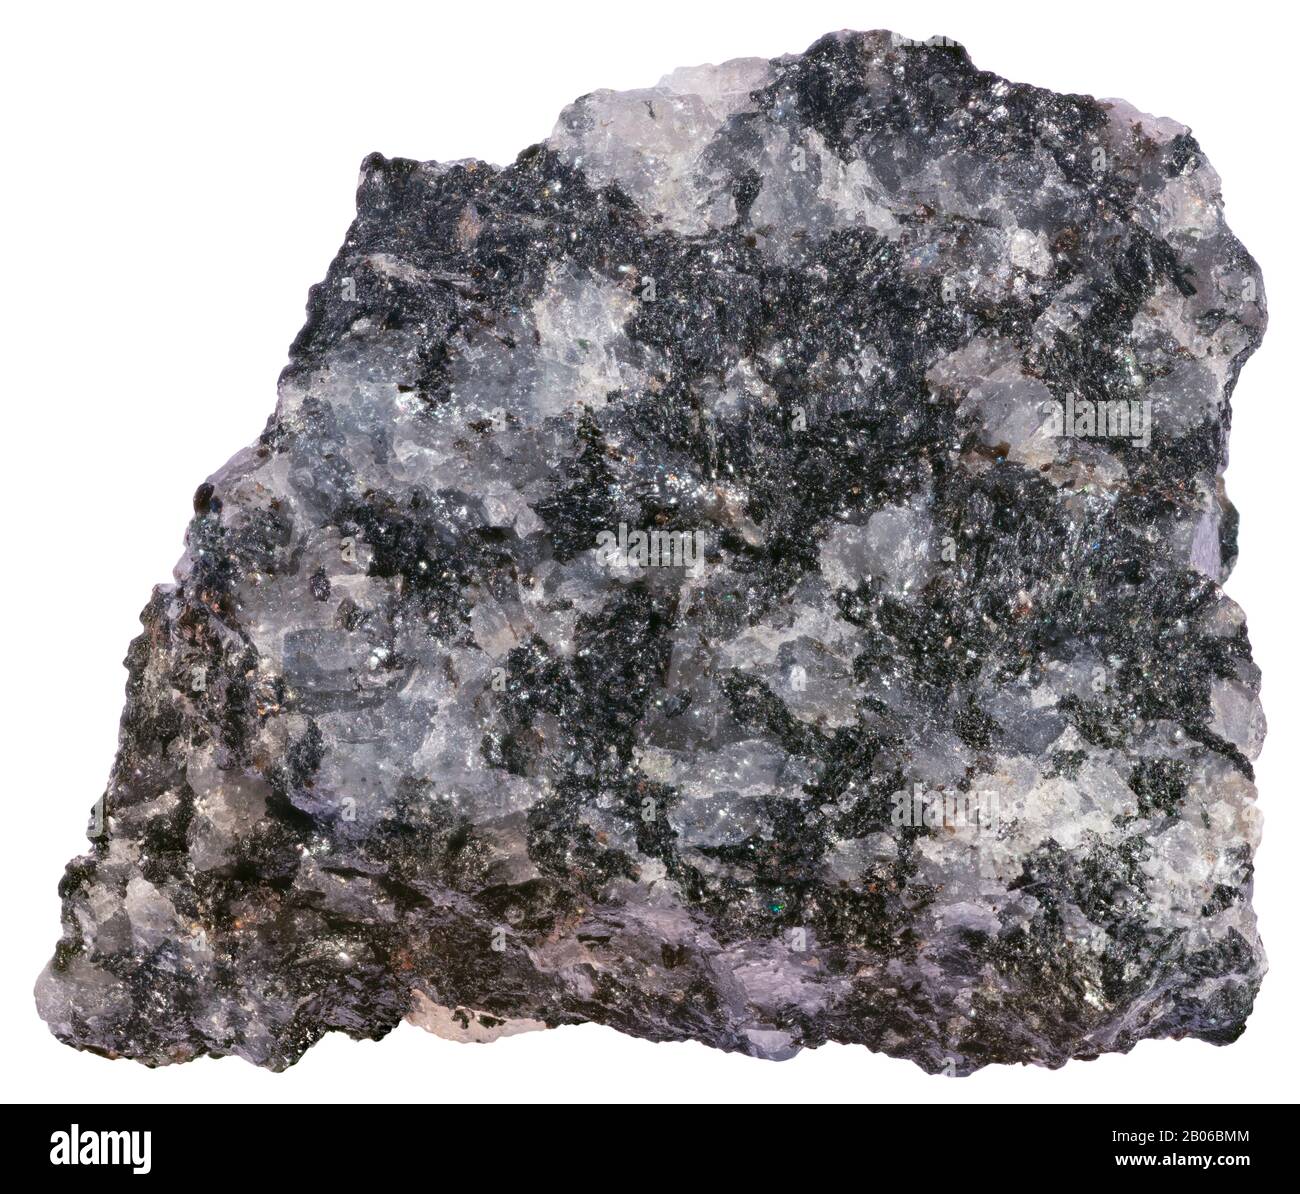 Gabrodiorite, Plutonique, Lanark, Ontario Rocks sur la limite minéralogique entre gabbro et diorite. Gris foncé à noir, grain fin à moyen, e Banque D'Images